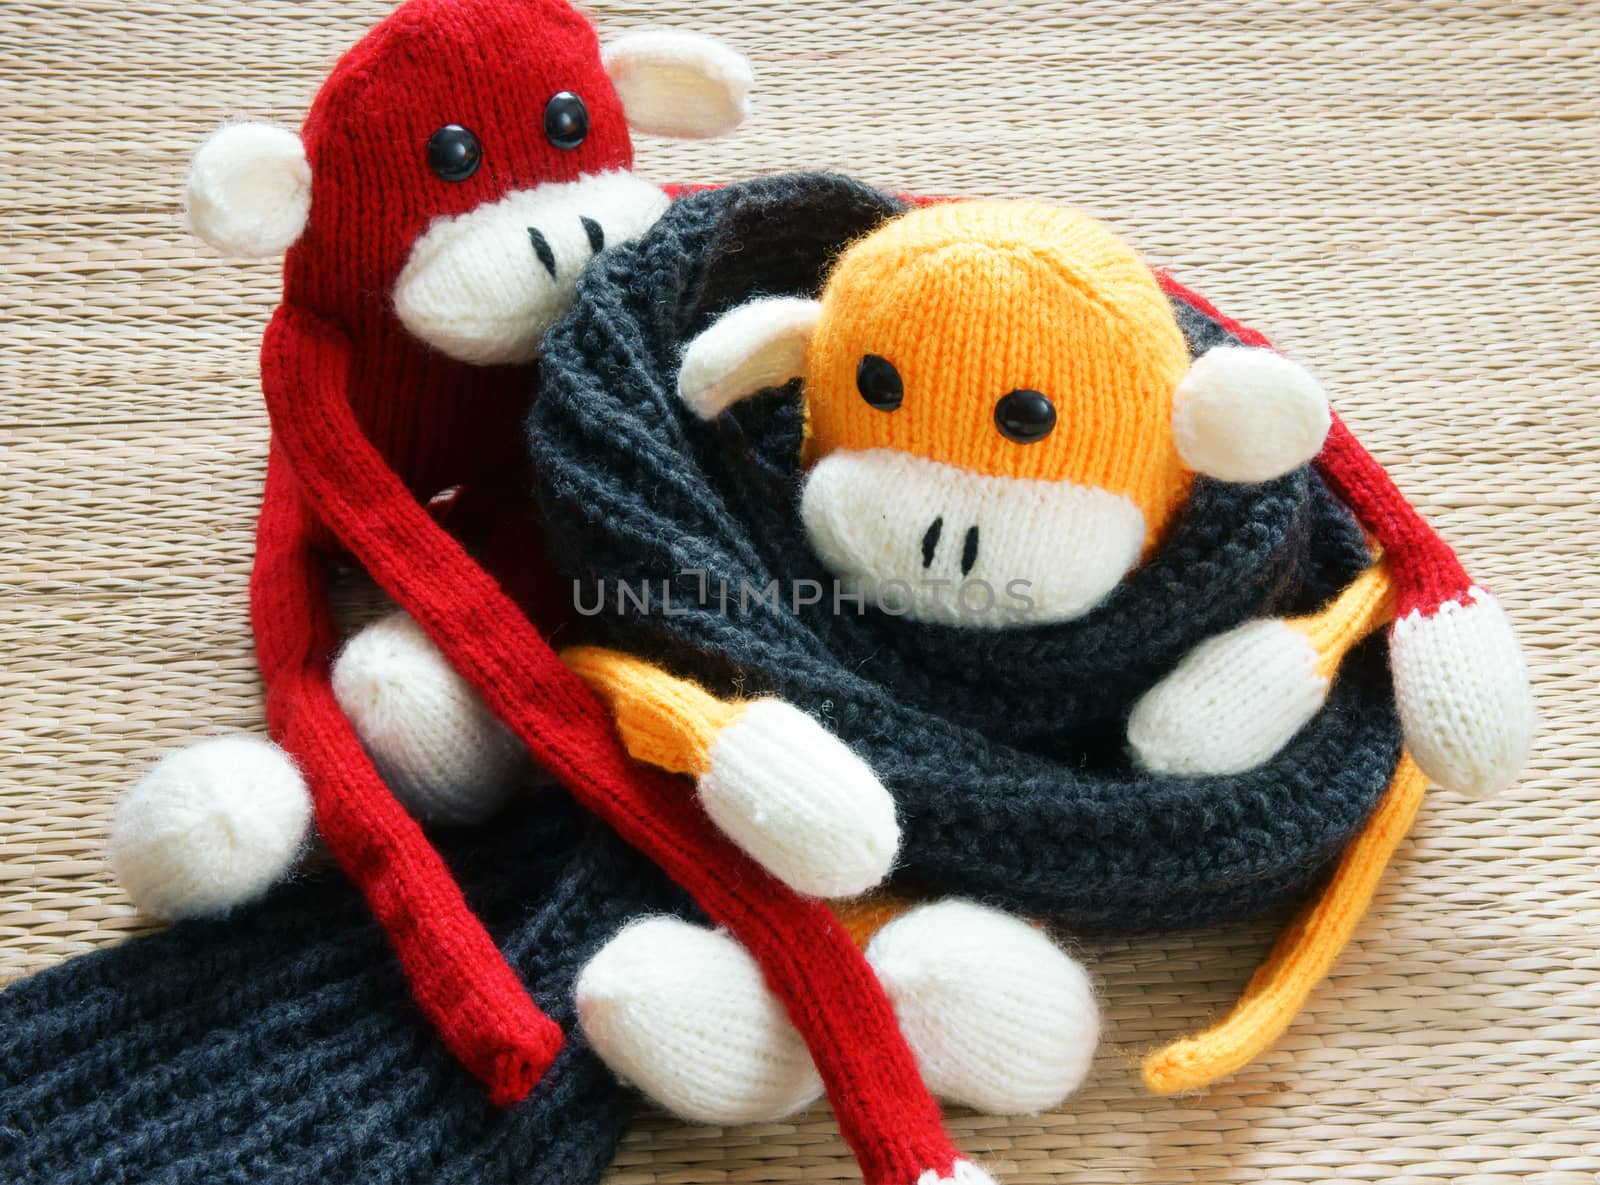 handmade, monkey, happy new year 2016, funny animal by xuanhuongho